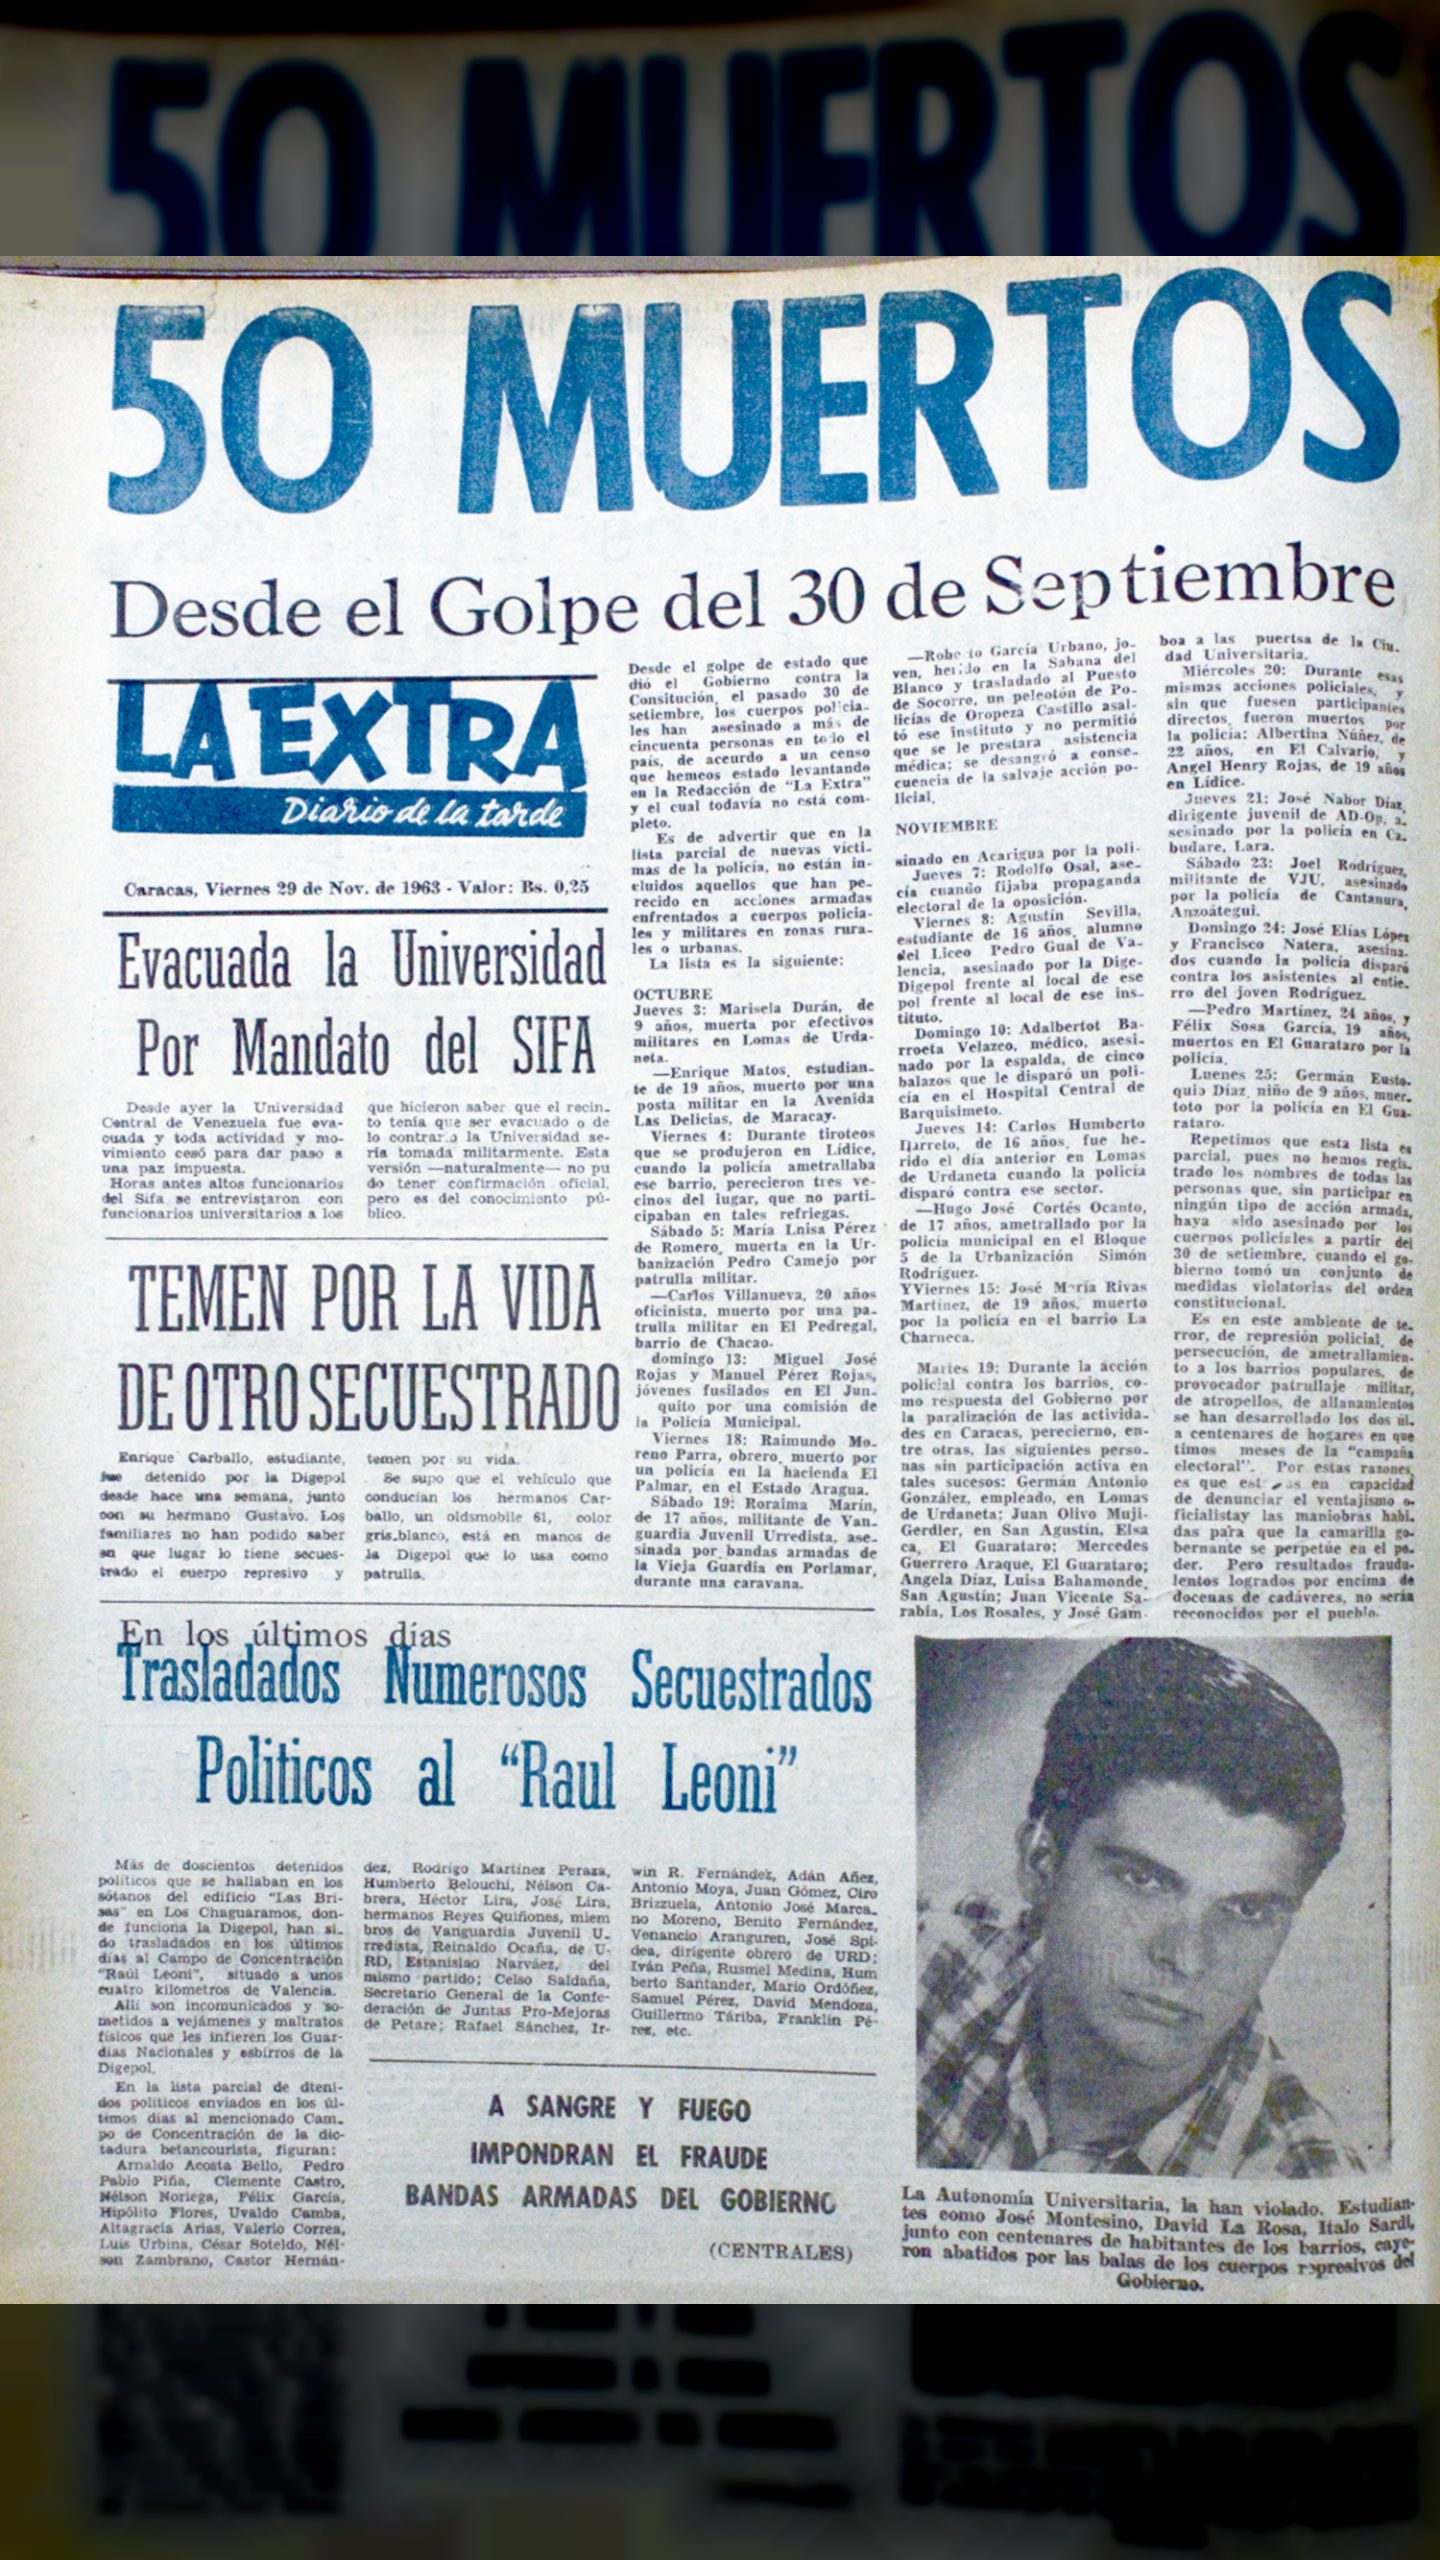 50 muertos Desde el Golpe del 30 de septiembre (La Extra, 23 de noviembre 1963)